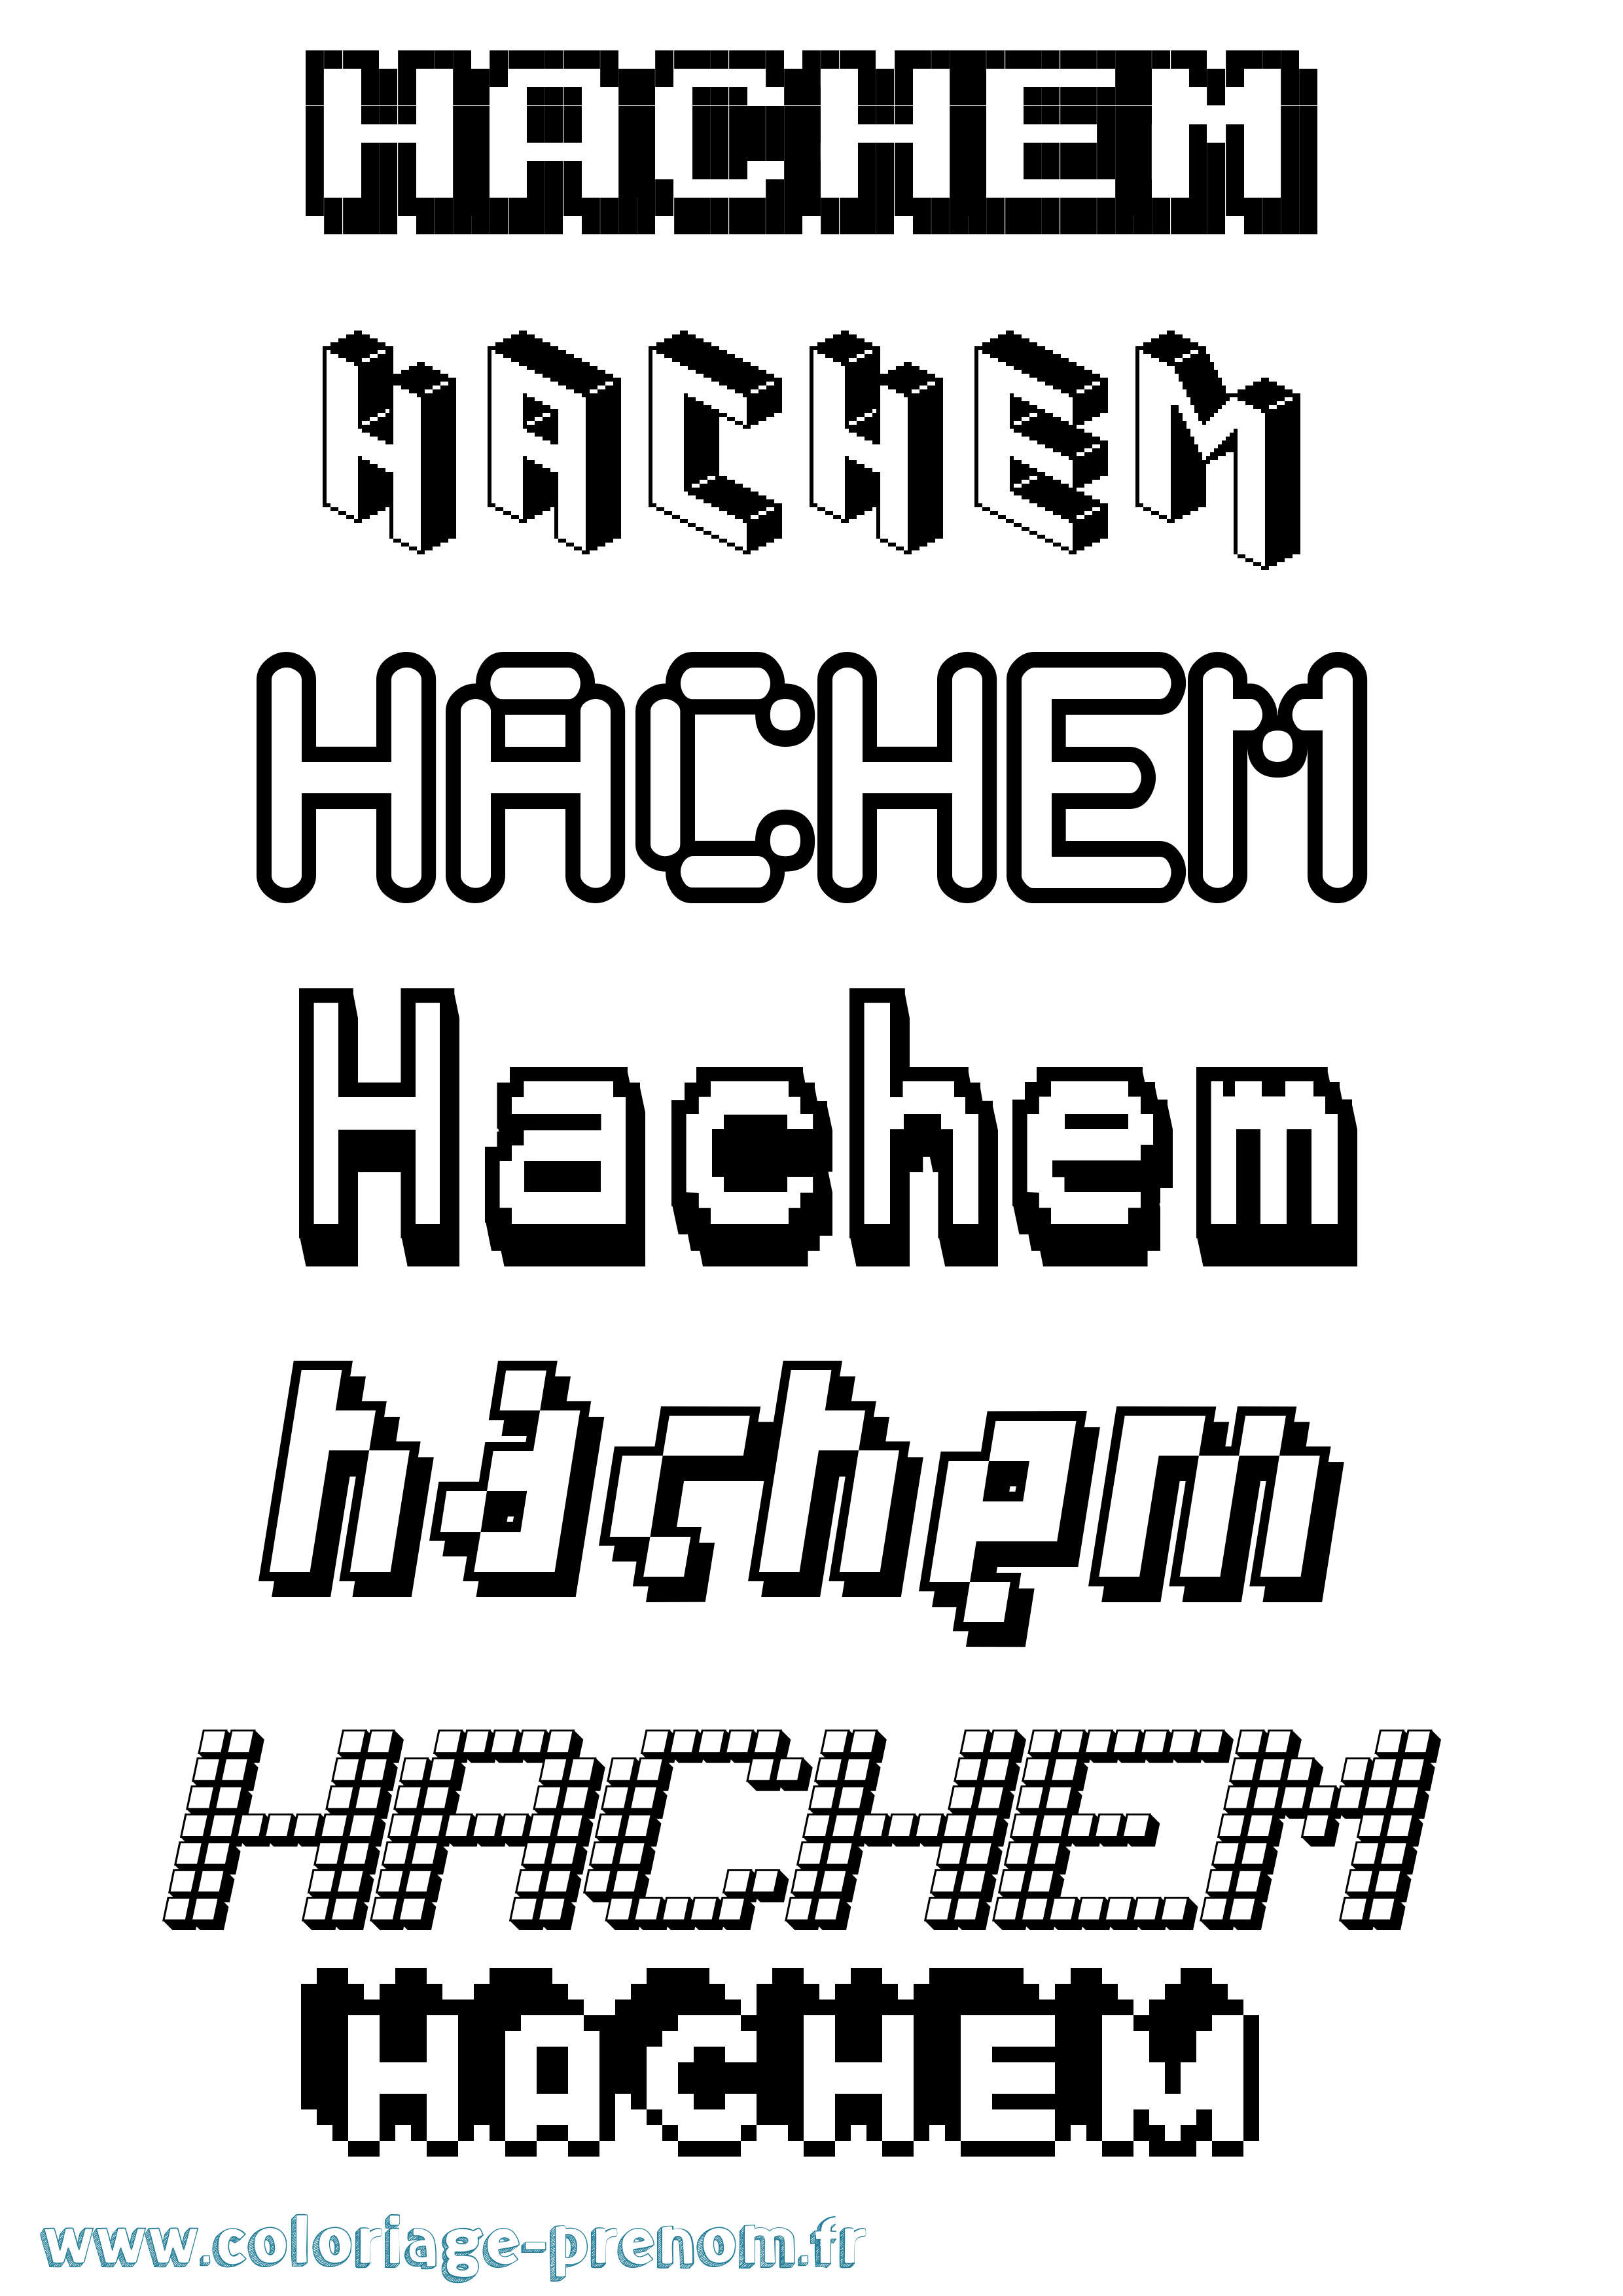 Coloriage prénom Hachem Pixel